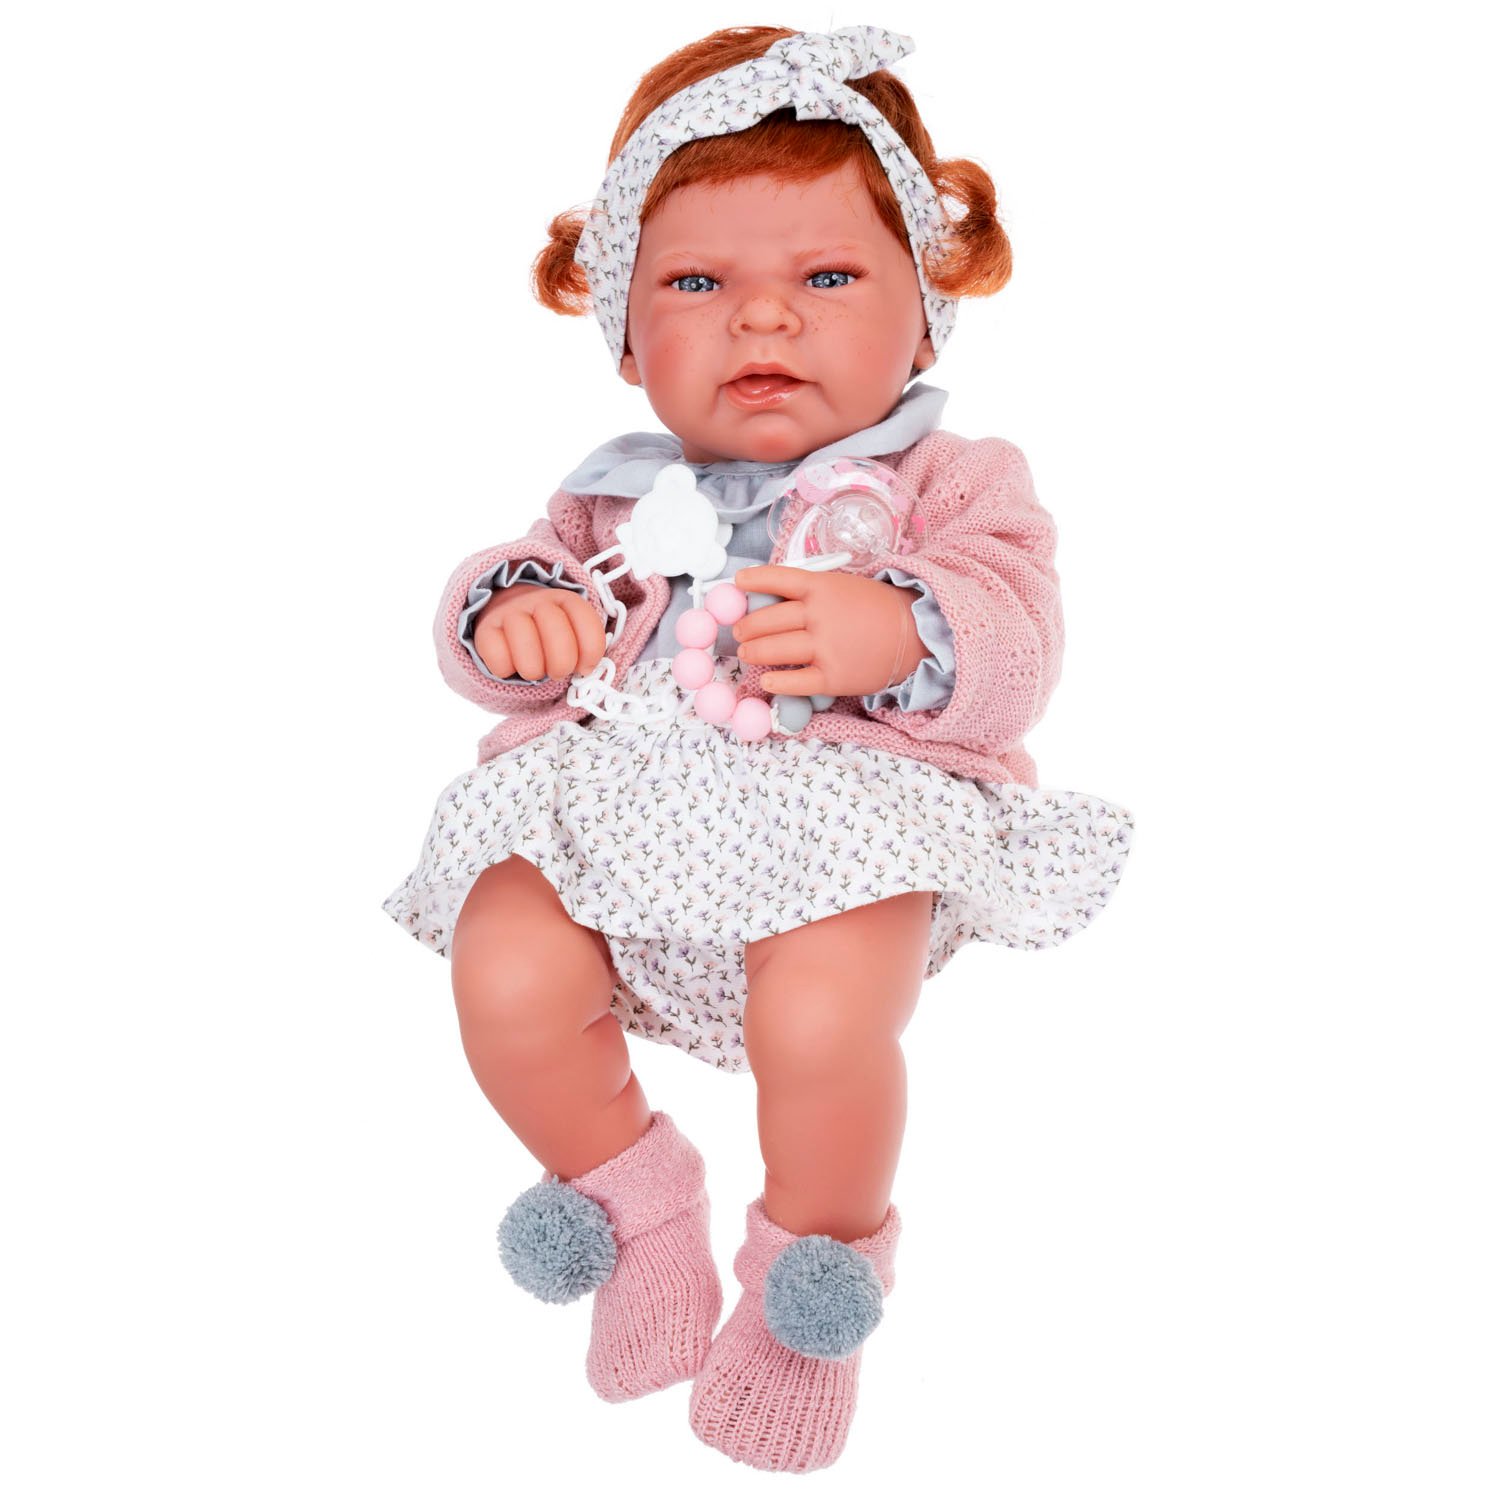 Купить Куклу Антонио Хуан В Интернет Магазине